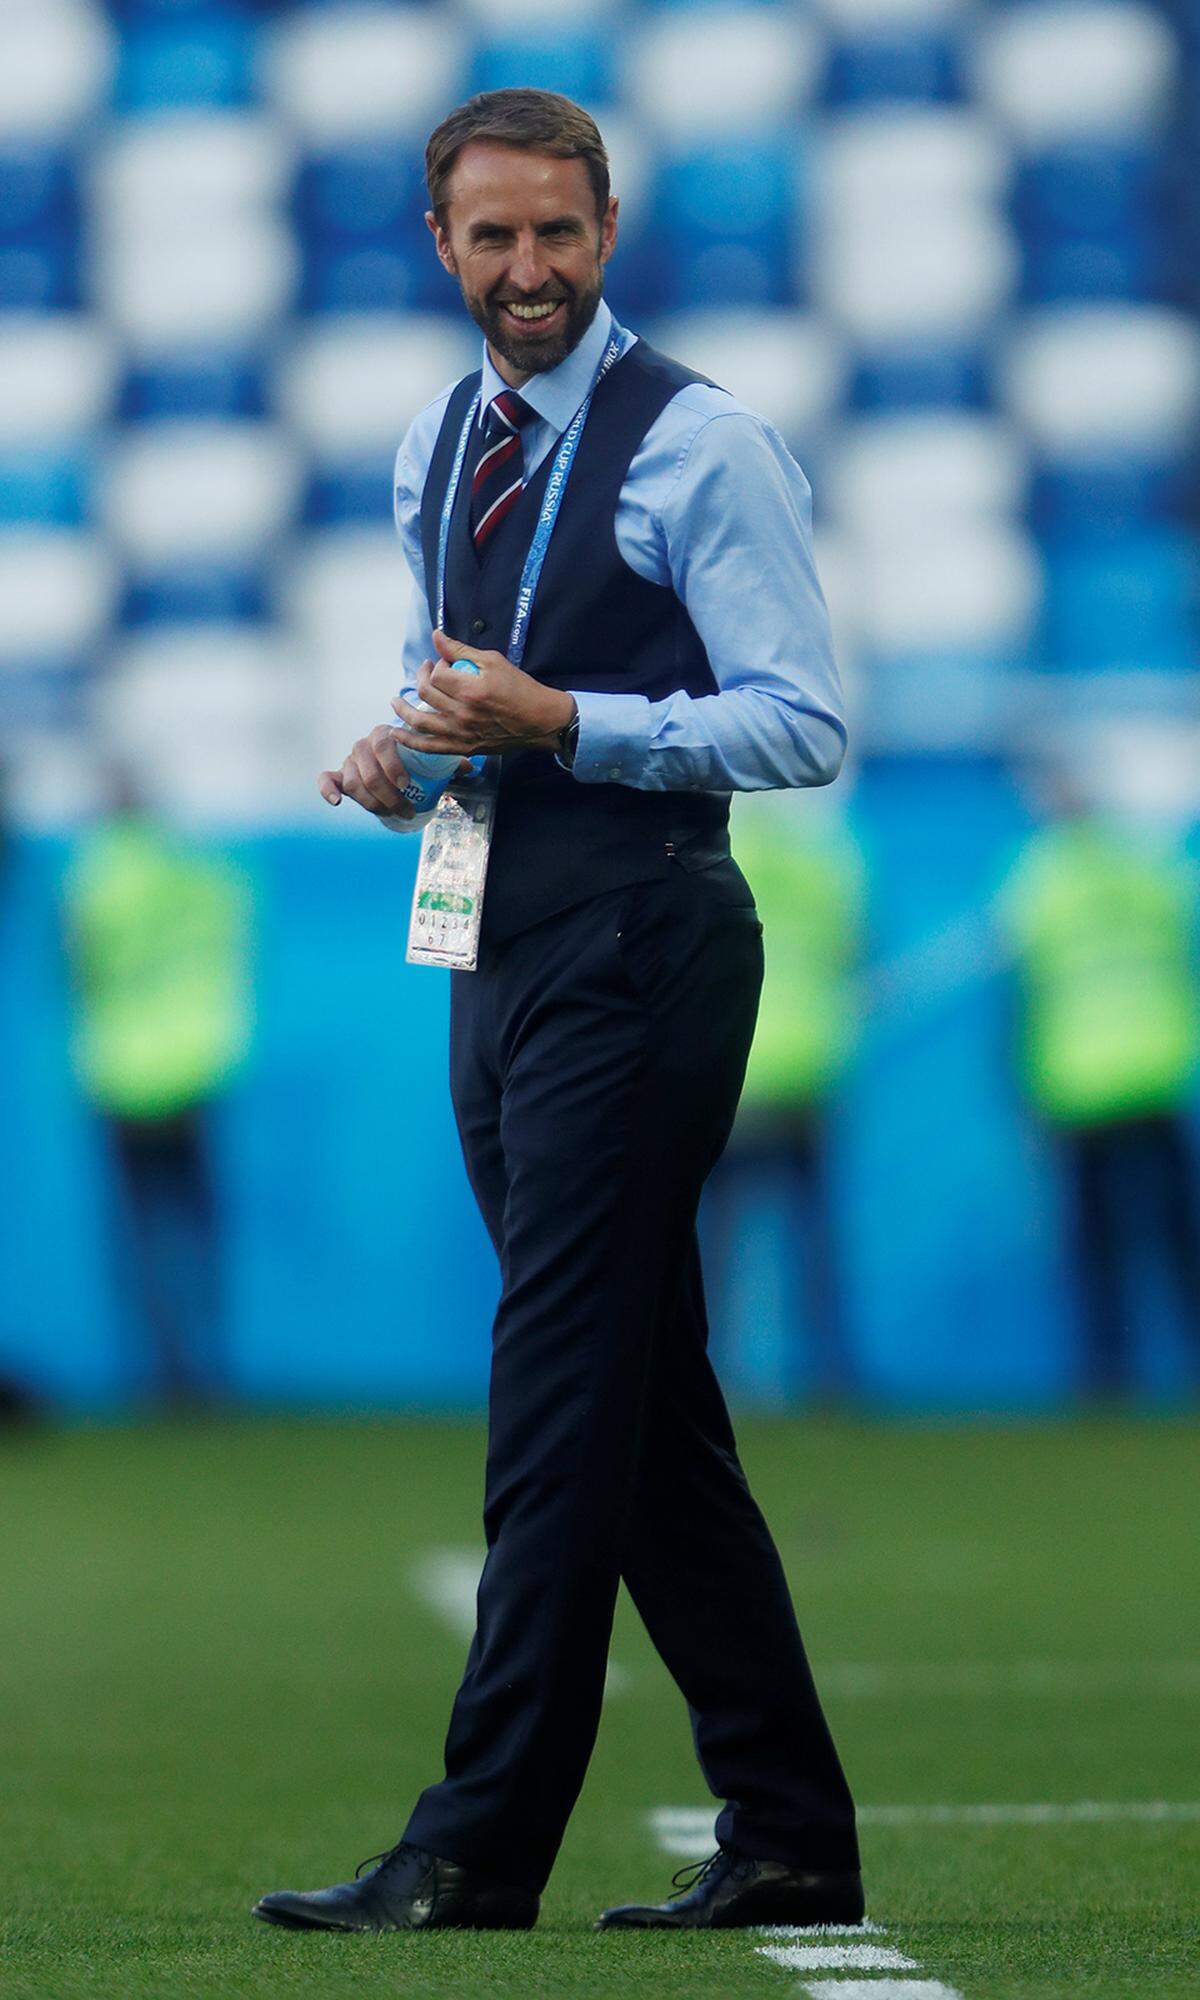 Die neue Stilikone am Trainer-Himmel? Auf alle Fälle setzt England-Coach Gareth Southgate bei dieser WM modische Maßstäbe. Sein Signature-Look: dreiteiliger dunkler Anzug, der auf jeden Zentimeter passgenau sitzt, gepflegter Bart, edle Schuhe und die Krawatte strahlt in Union-Jack-Farben. Dieser Mann weiß, wie hochwertige Maßkonfektion funktioniert. We are very amused.